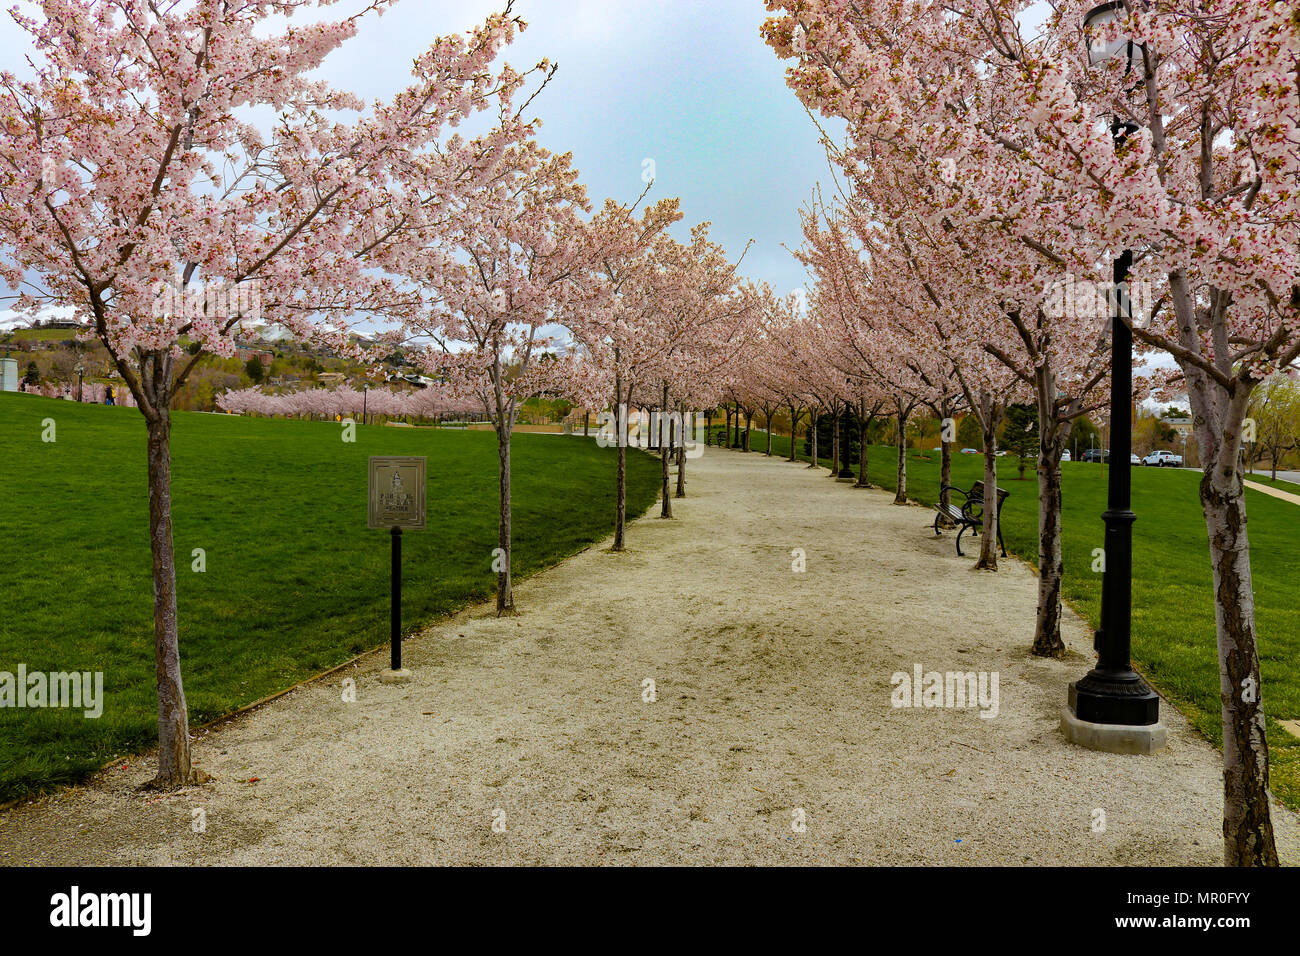 Il sentiero del Parco attraverso la ciliegia alberi in fiore si trova a Salt Lake City nello Utah la capitale dello Stato. Percorso di nuovo una nuova vita come la primavera mostra il suo splendore Foto Stock